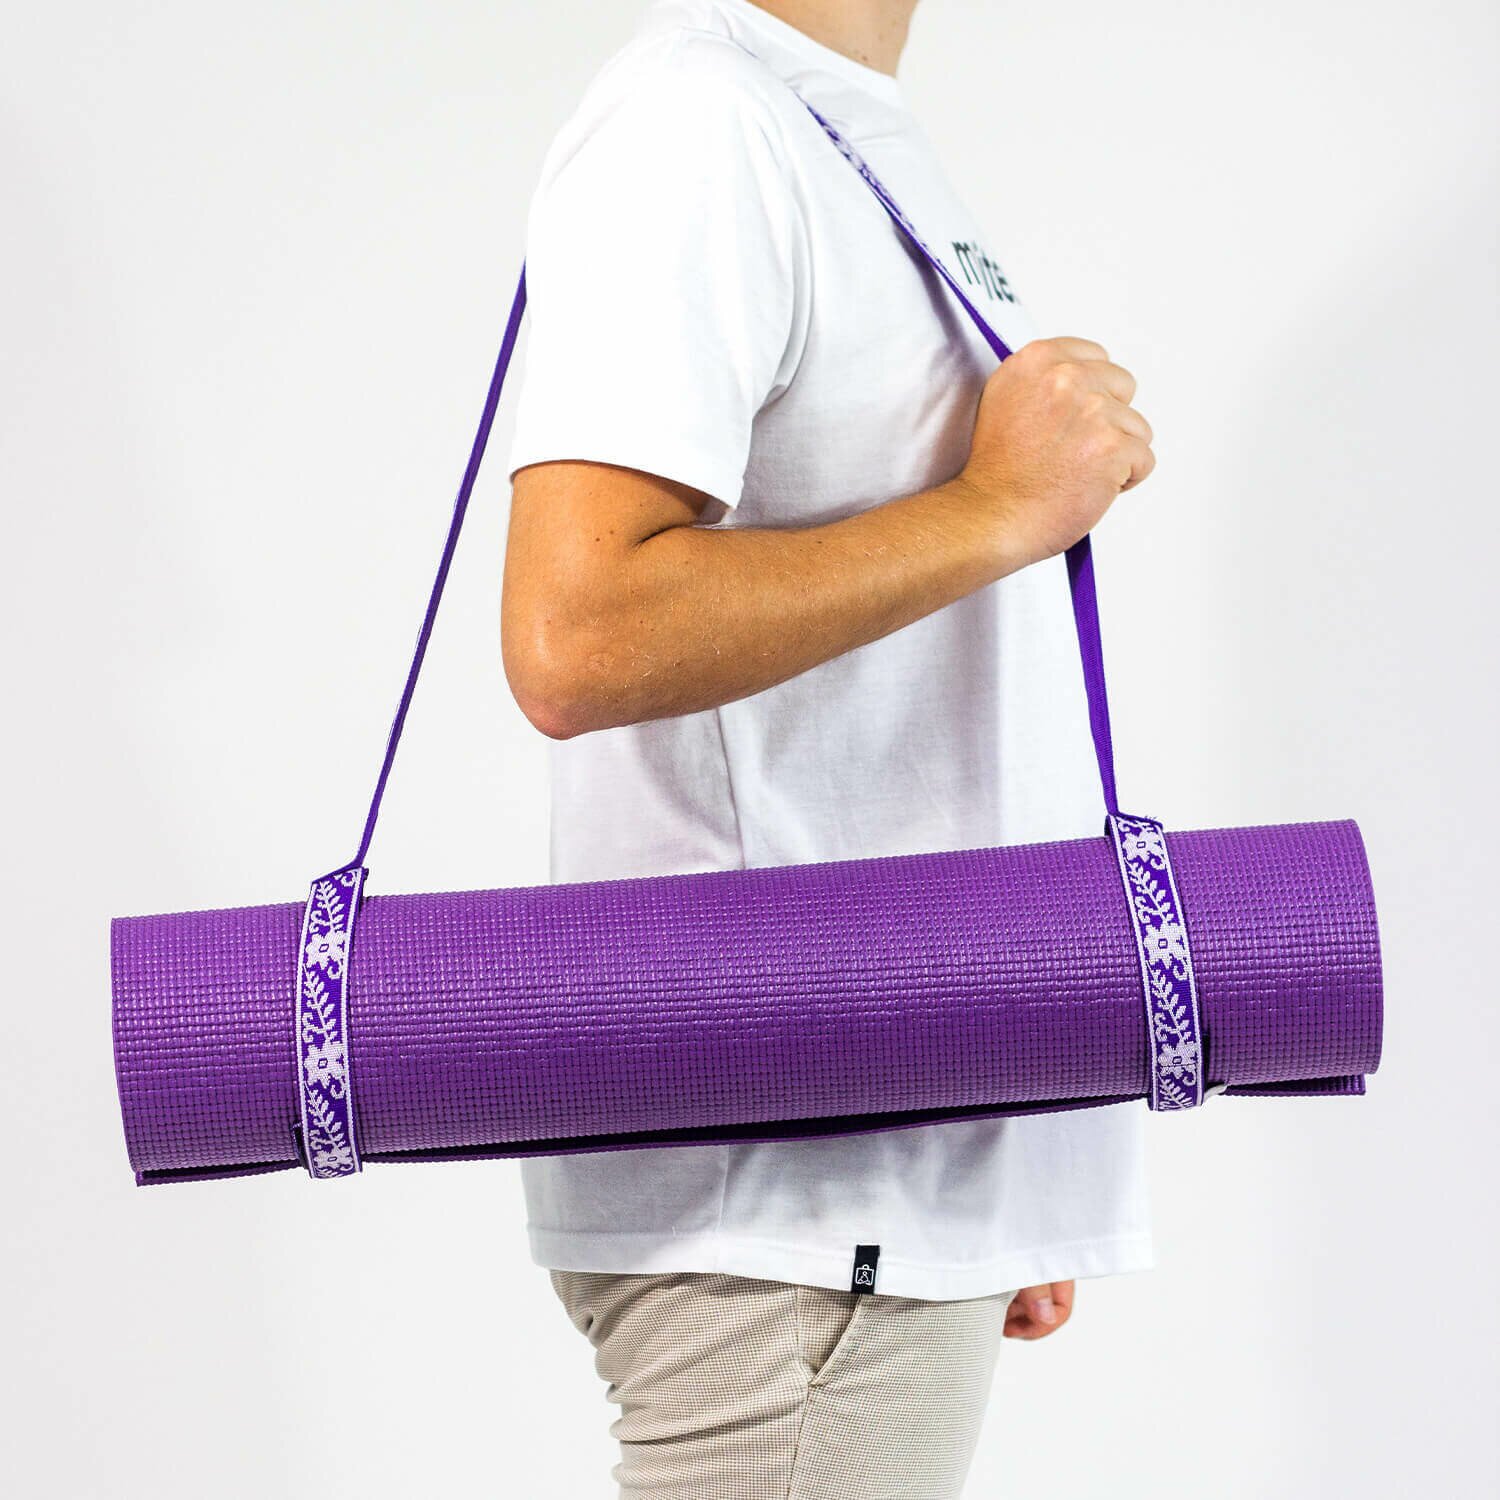 Tapete de yoga Rishikesh – 4.5mm PVC premium ecológico 9